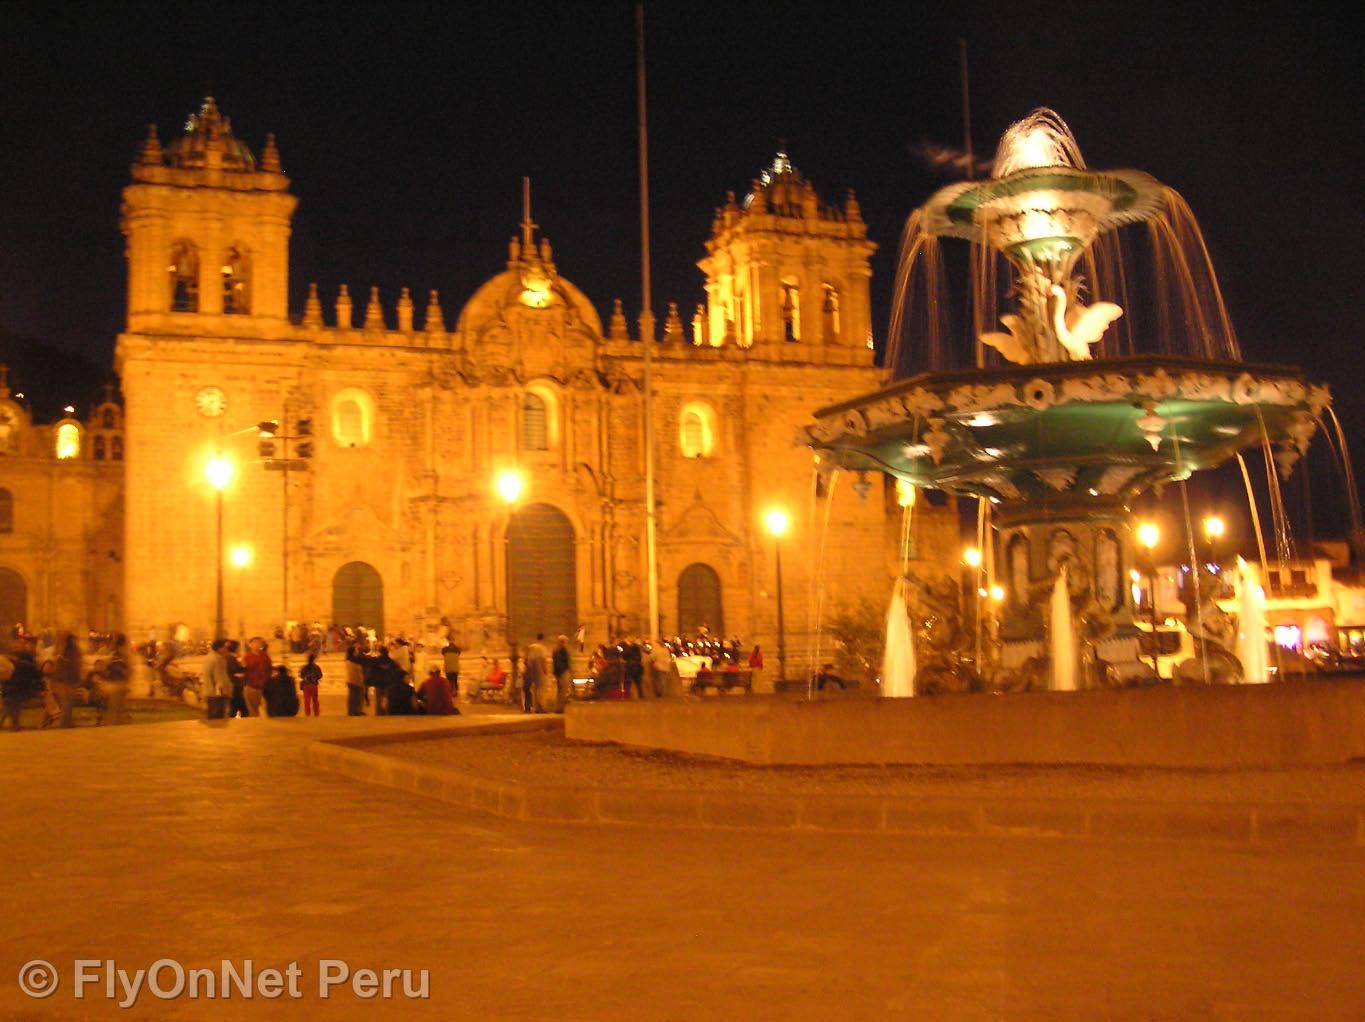 Photo Album: Cathedral of Cuzco